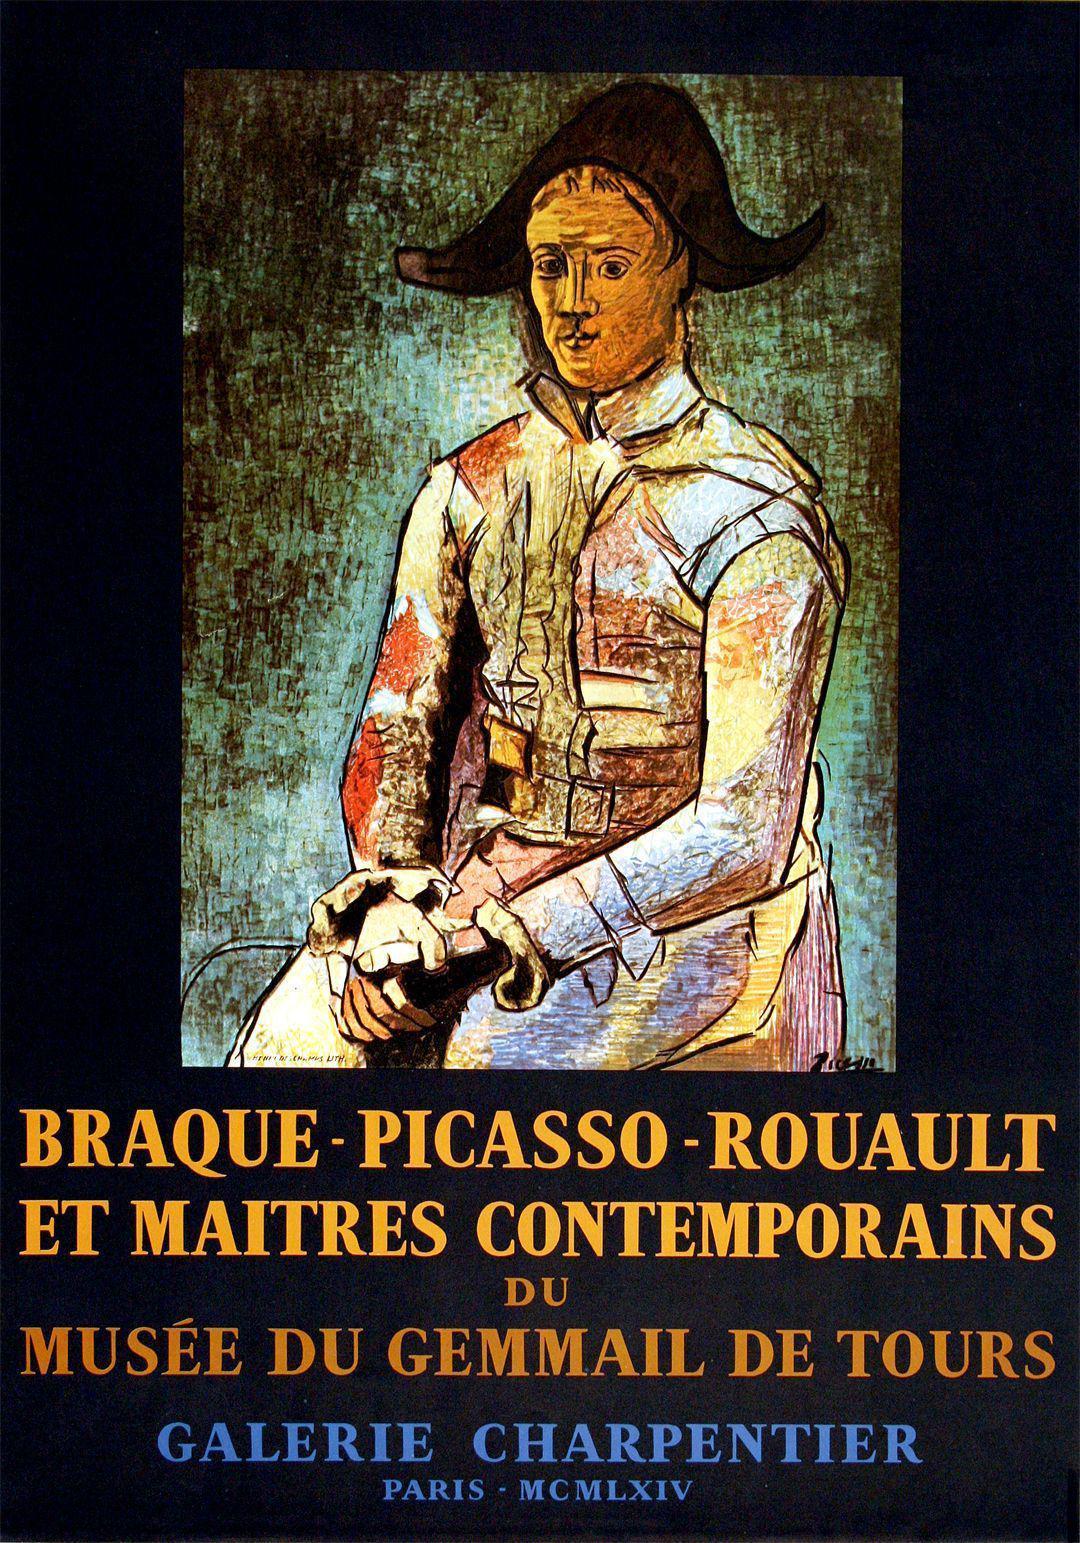 Picasso Musée du Gemmail de Tours Galerie Charpentier Poster 1964